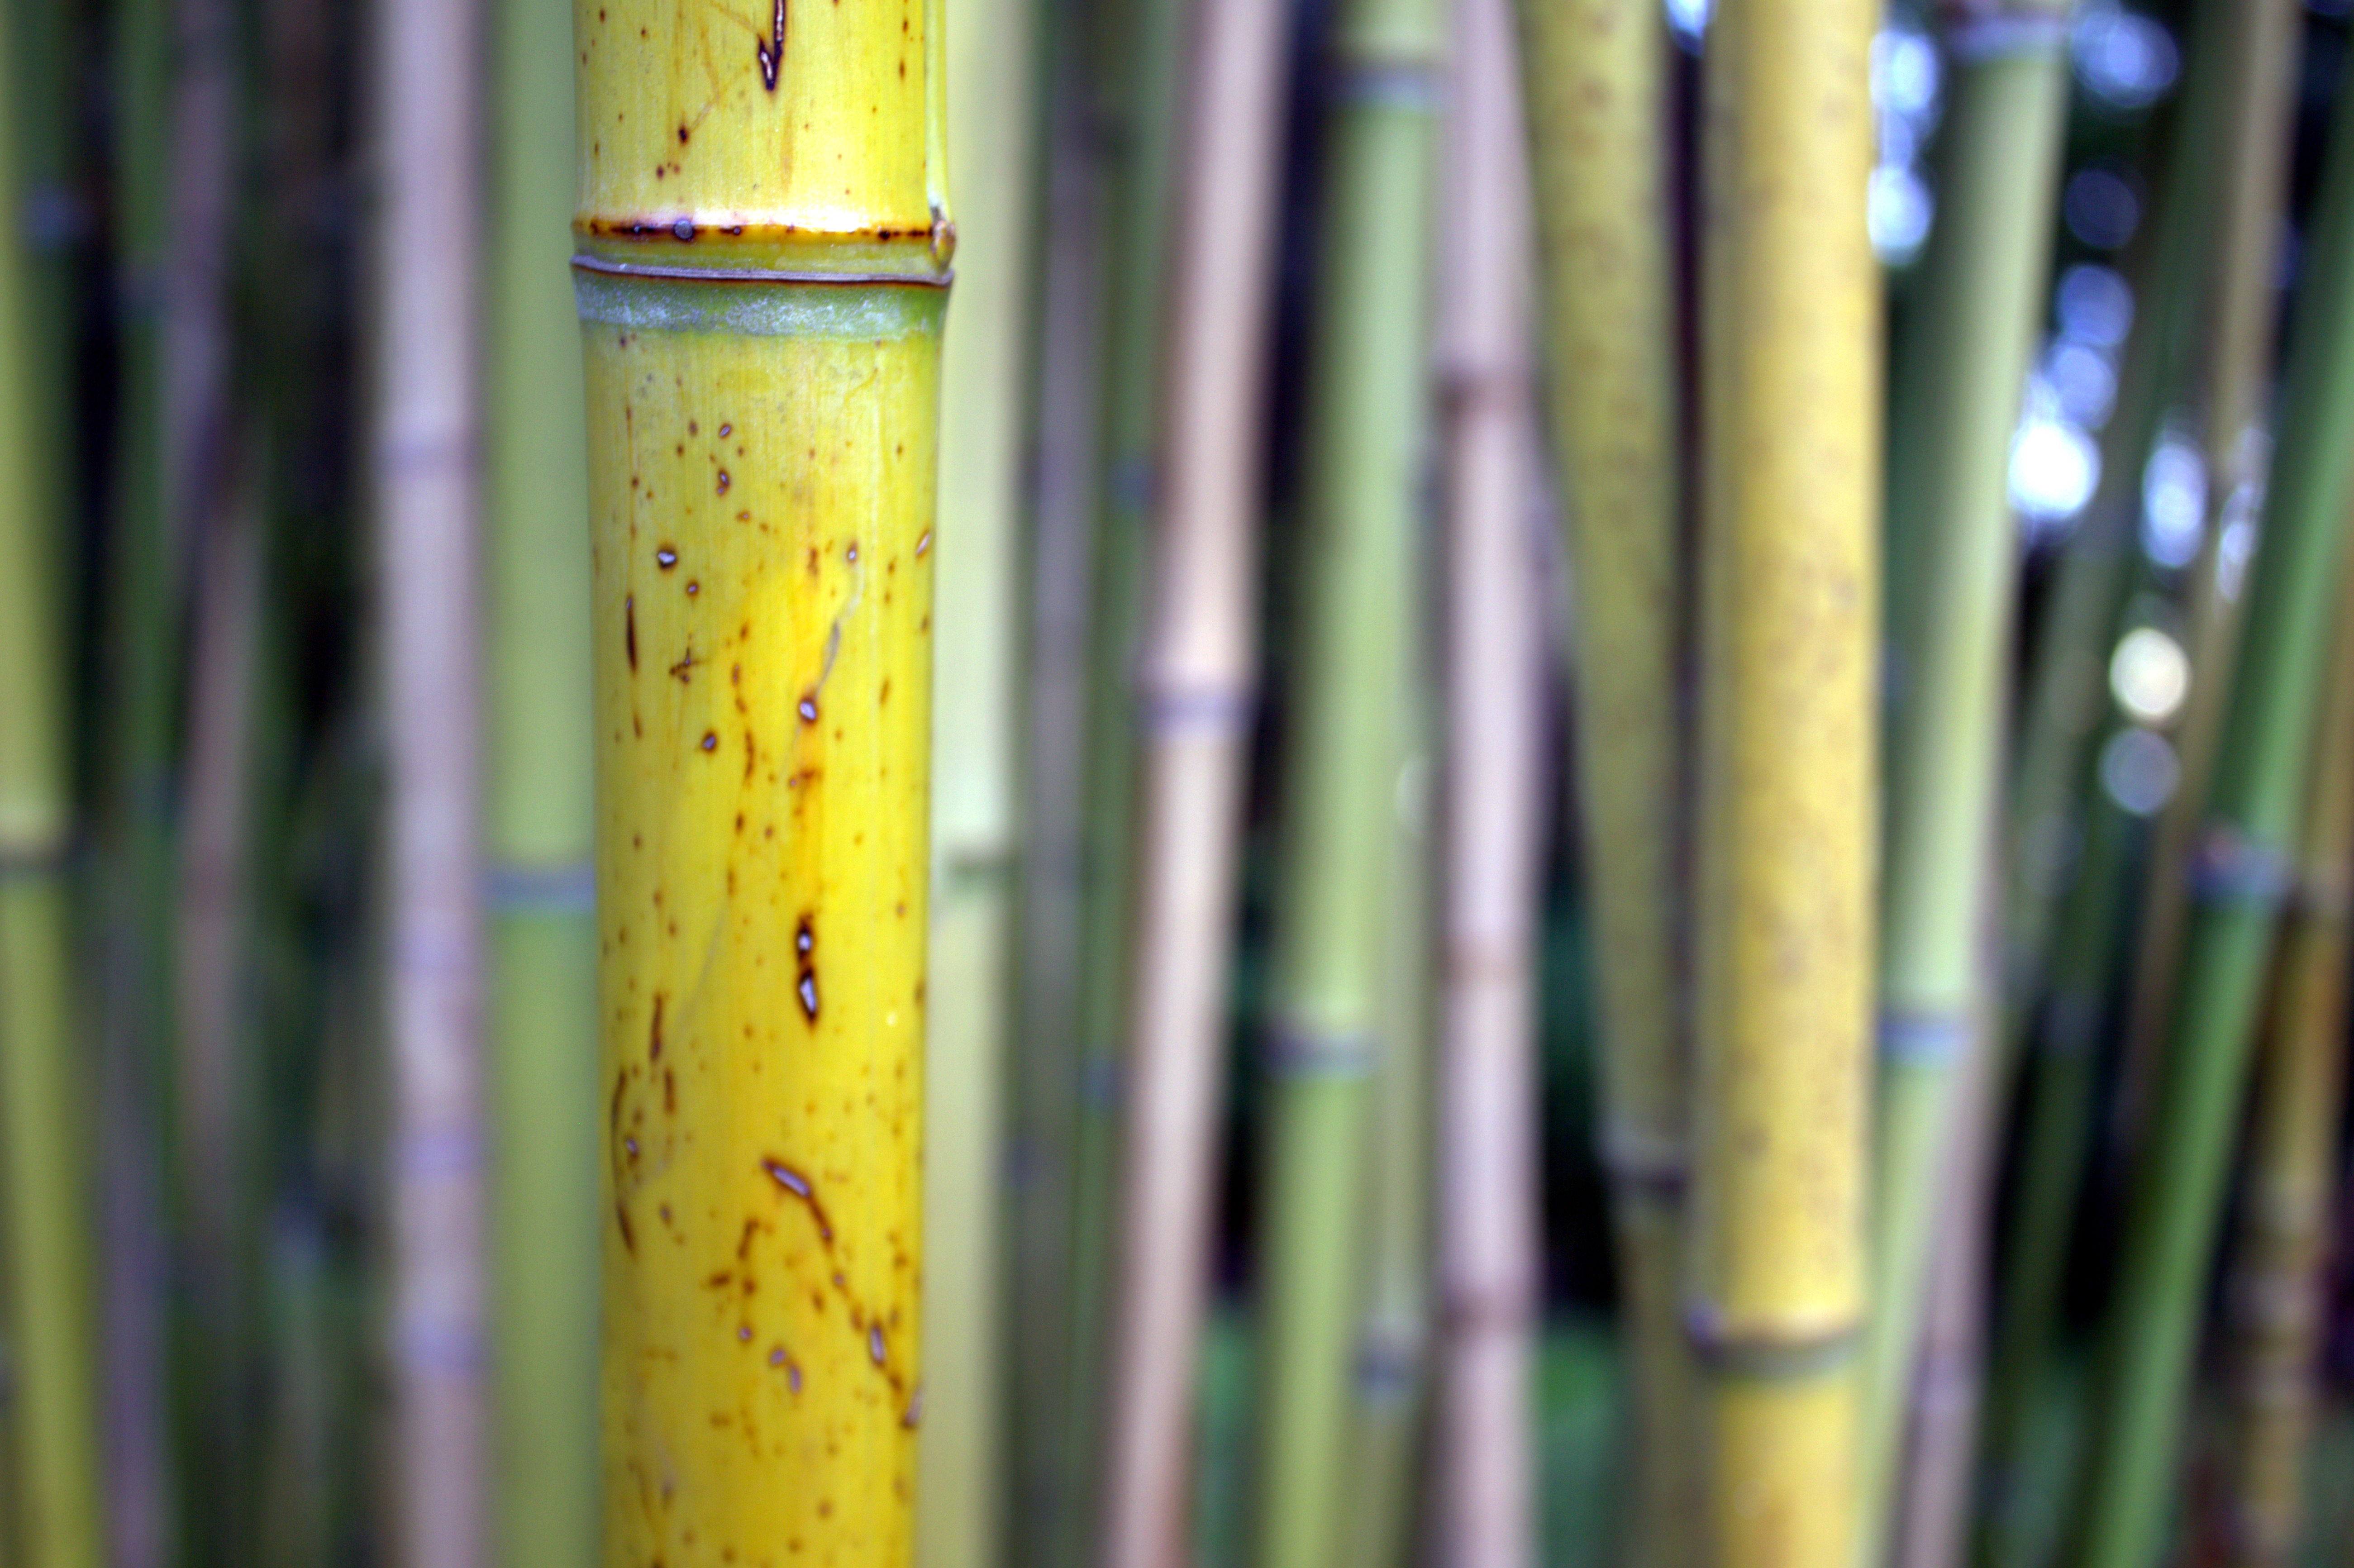 La paille japonaise est un revêtement mural en fibres de paille ou bambou. © Léna, CC BY 3.0, Wikimedia Commons